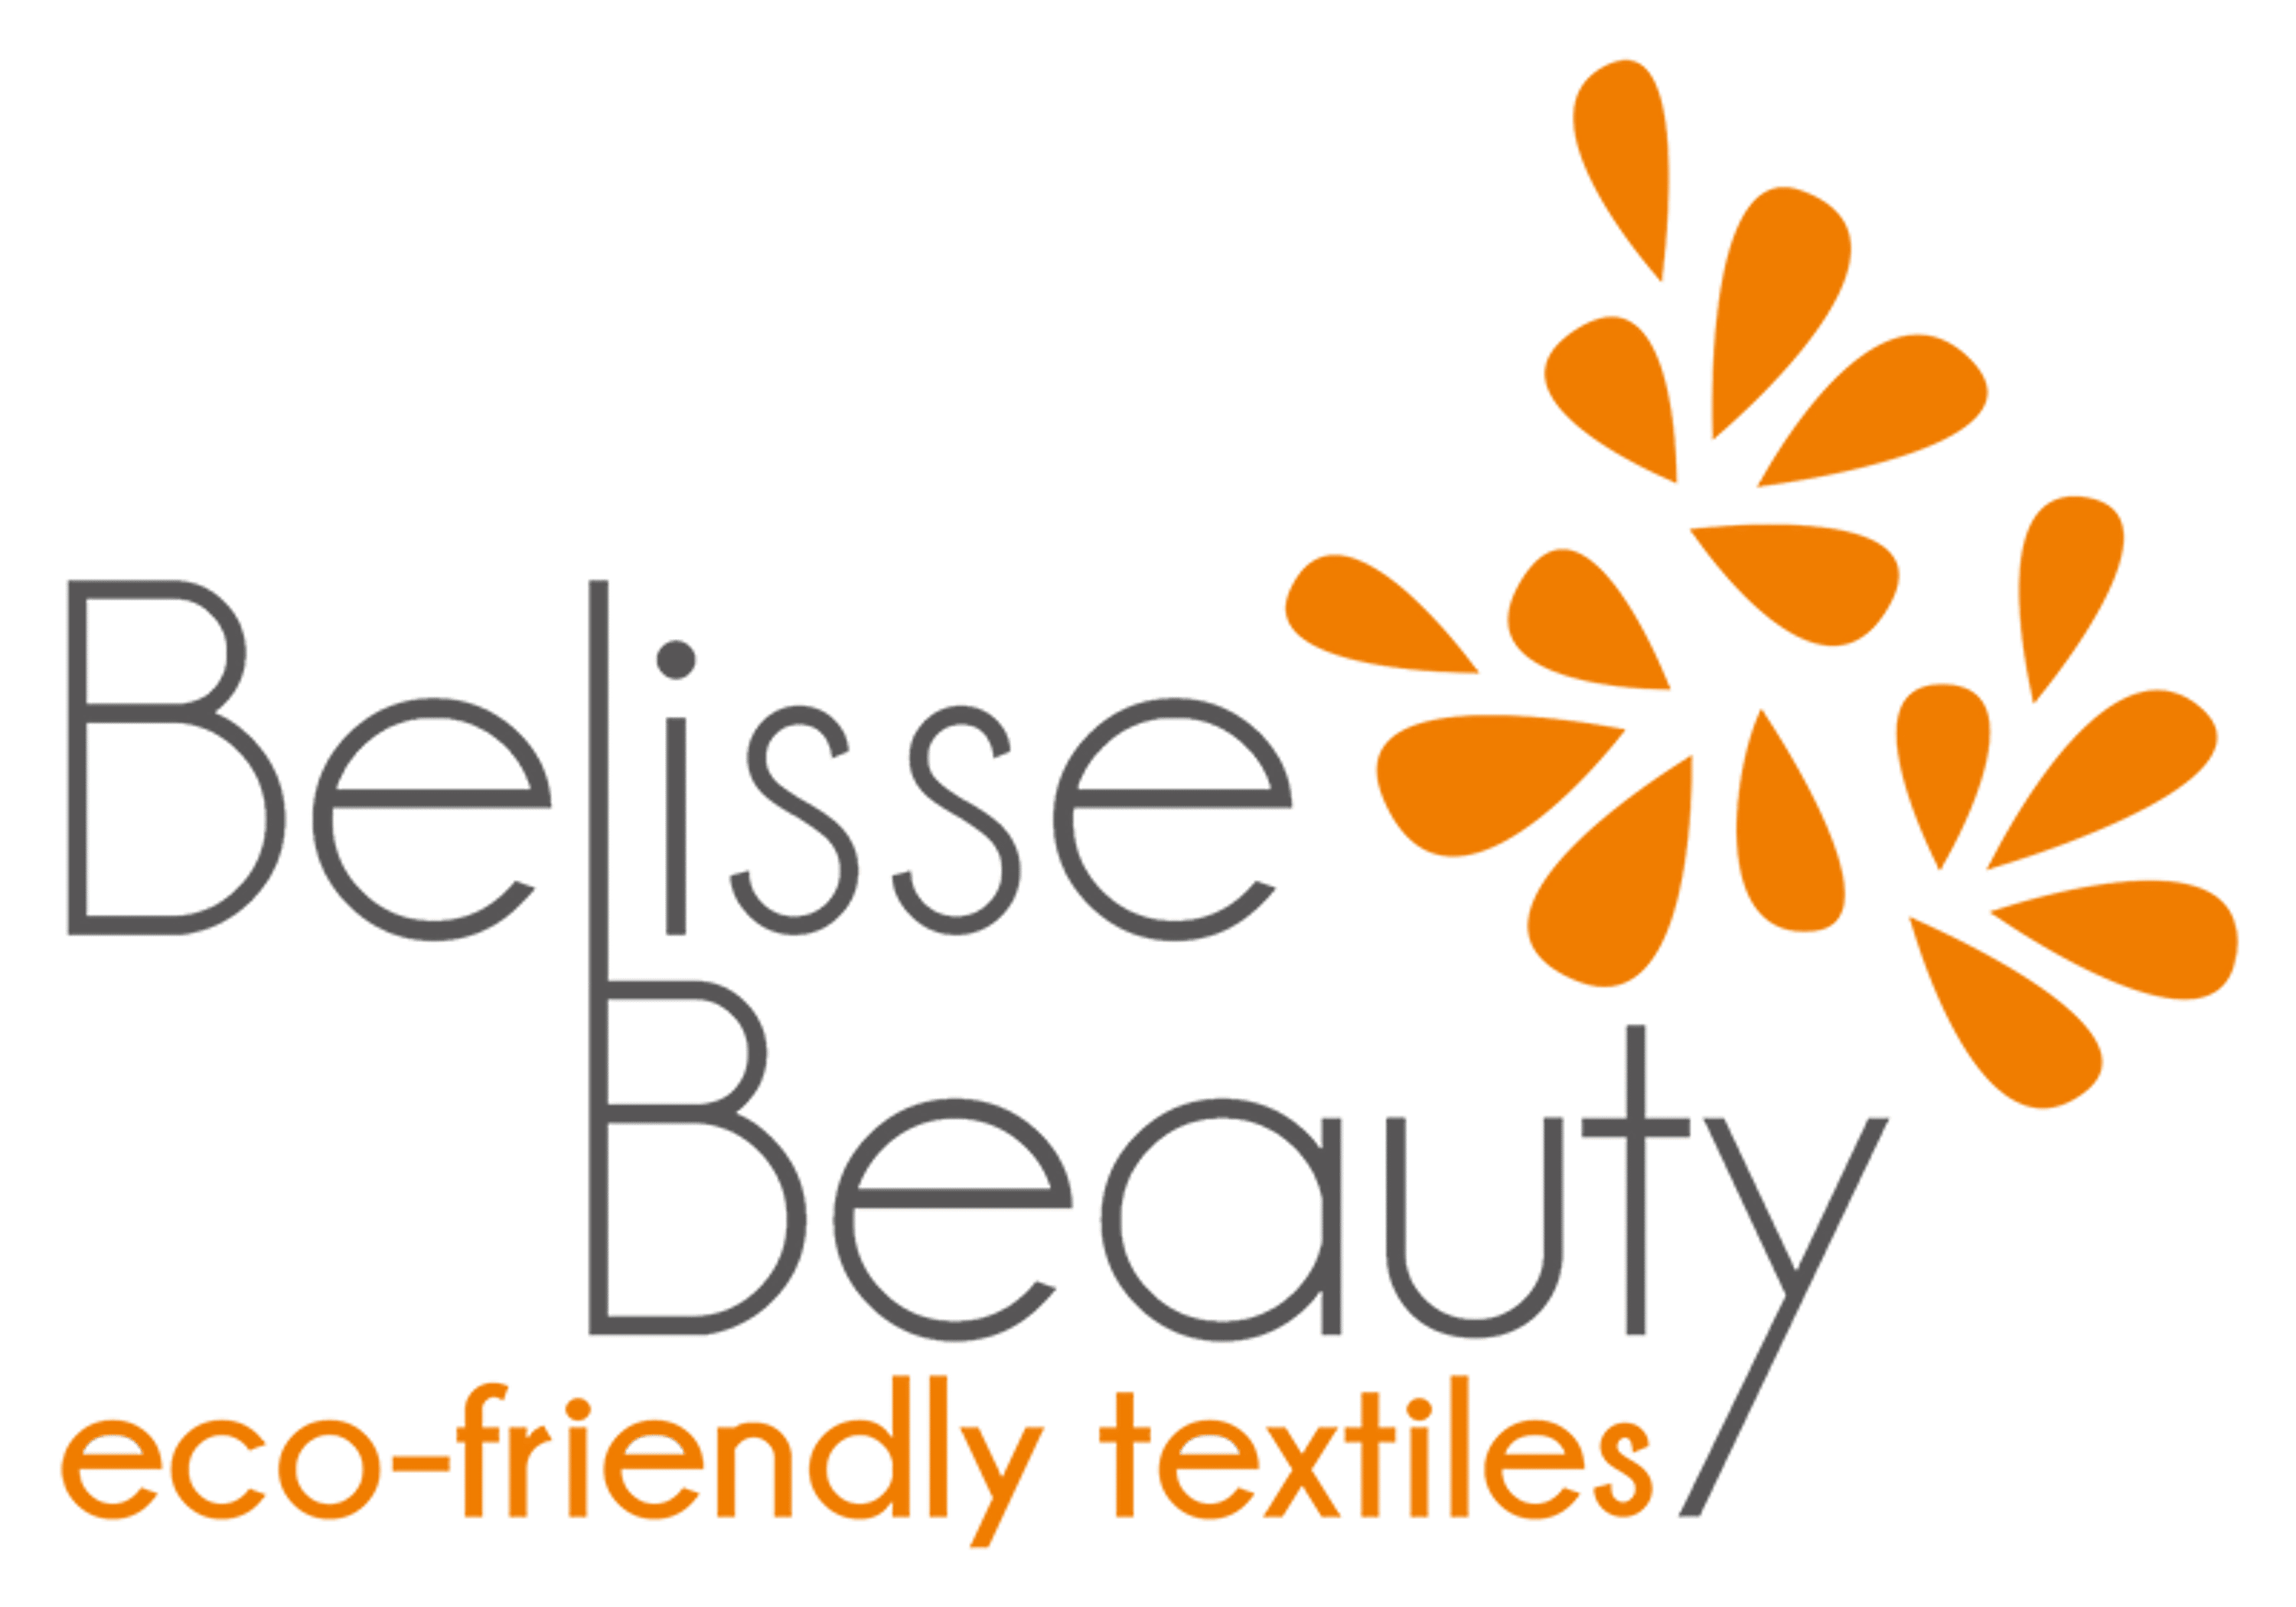 (c) Belisse-beauty.co.uk